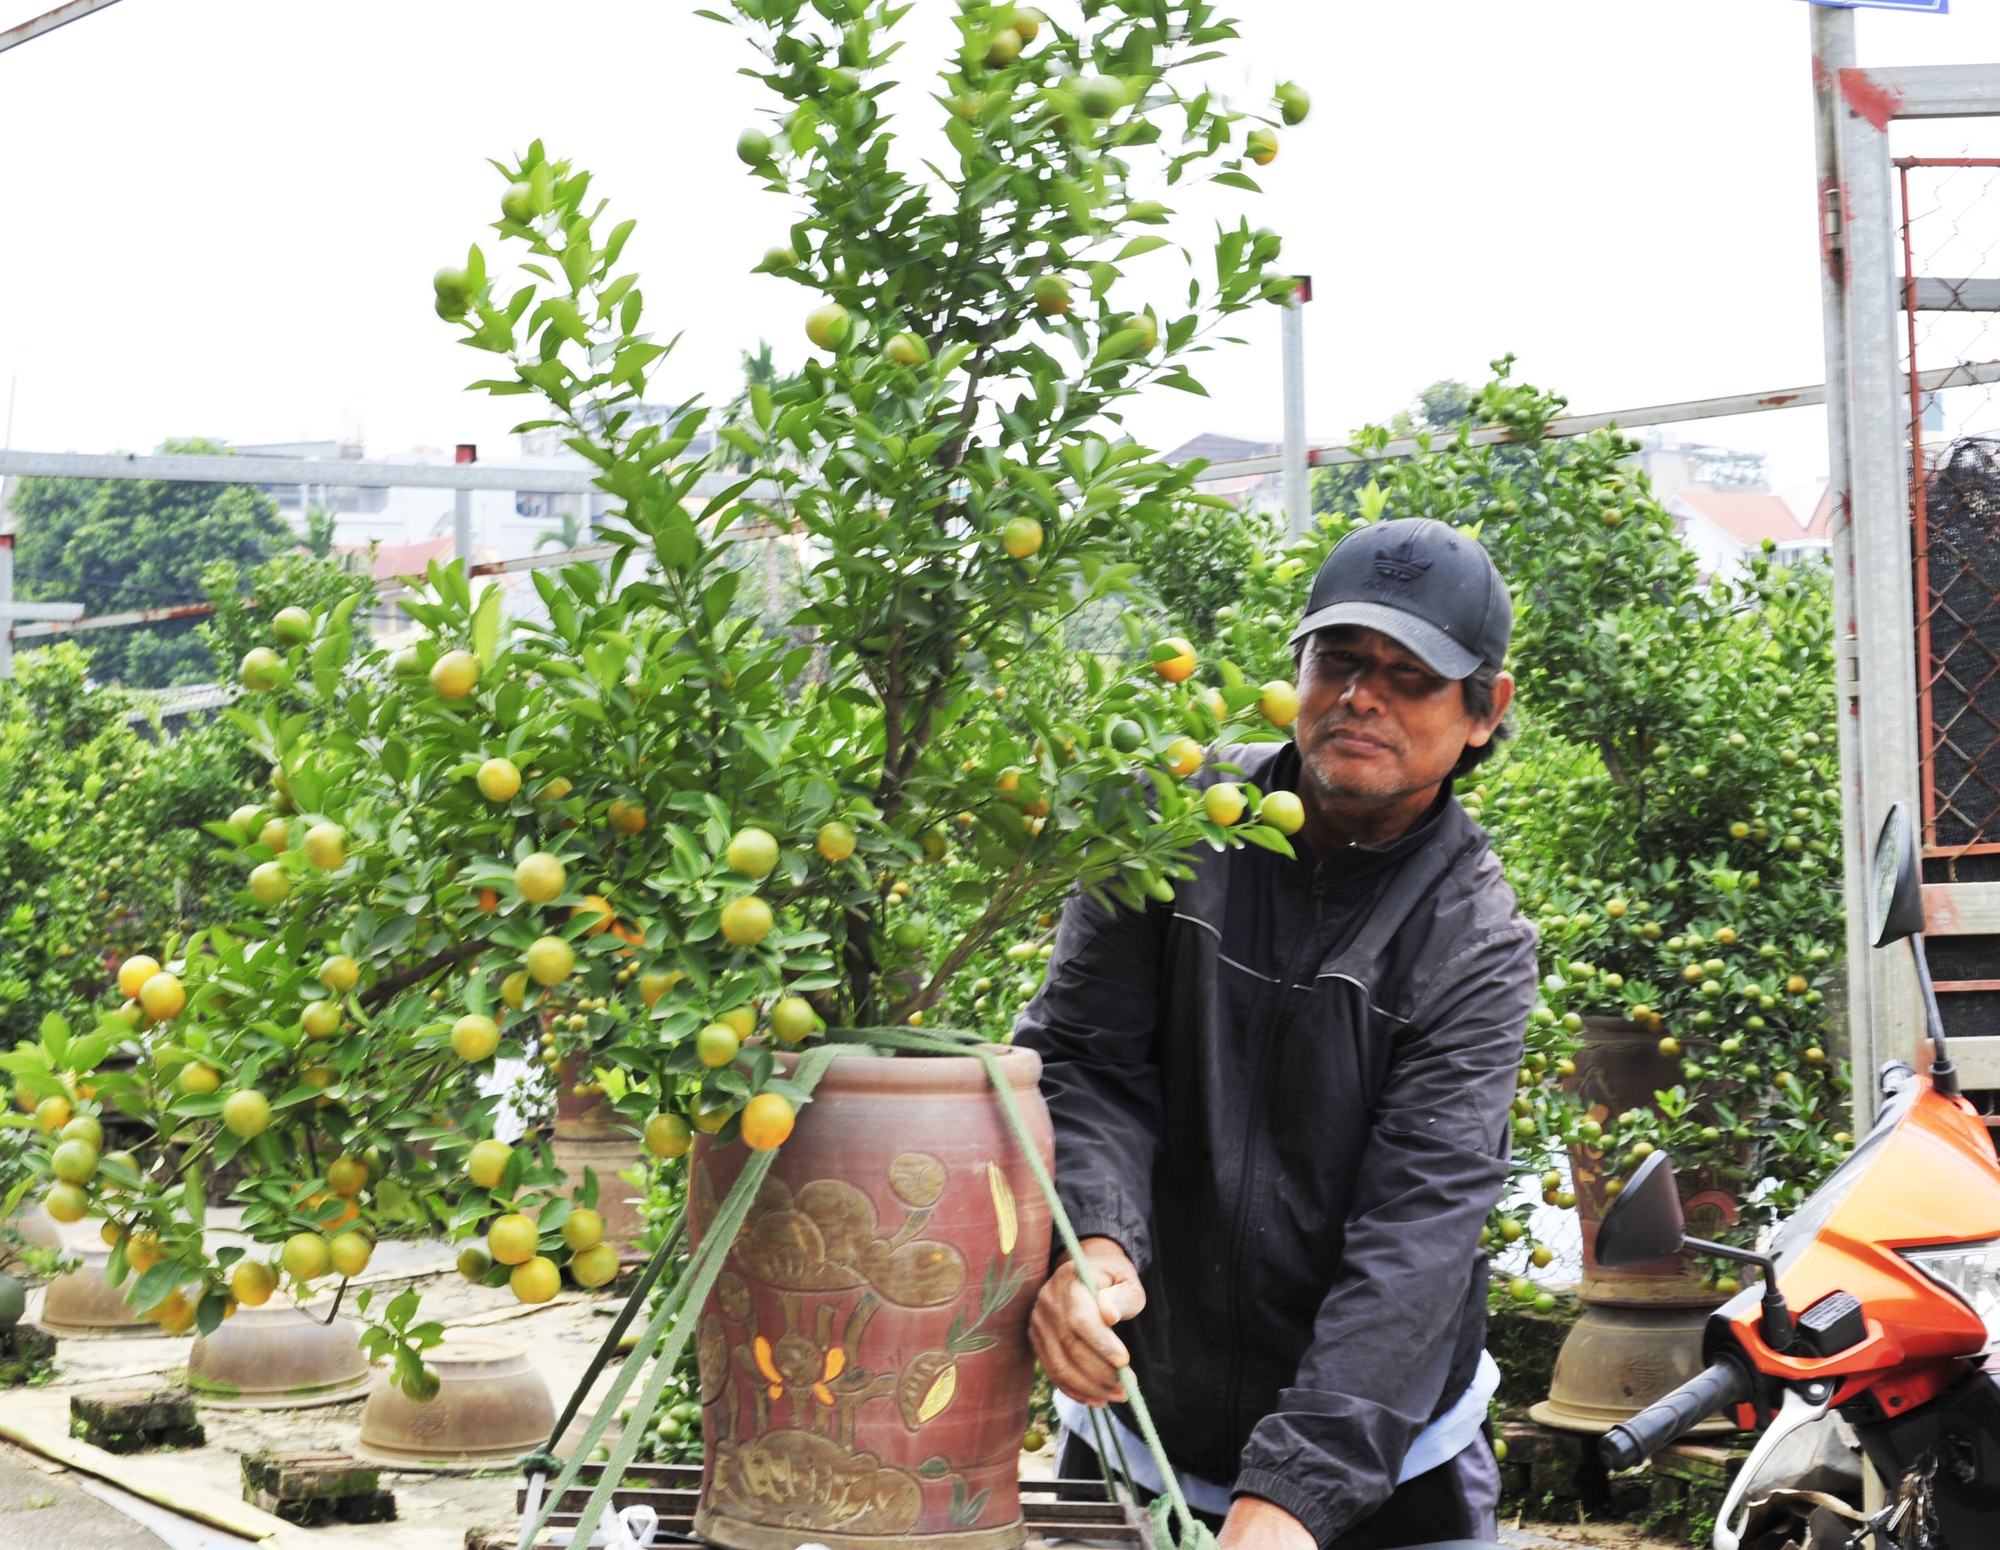 Hà Nội: Dân buôn rục rịch mua quất Tết, chủ vườn phấn khởi hy vọng bội thu - ảnh 1